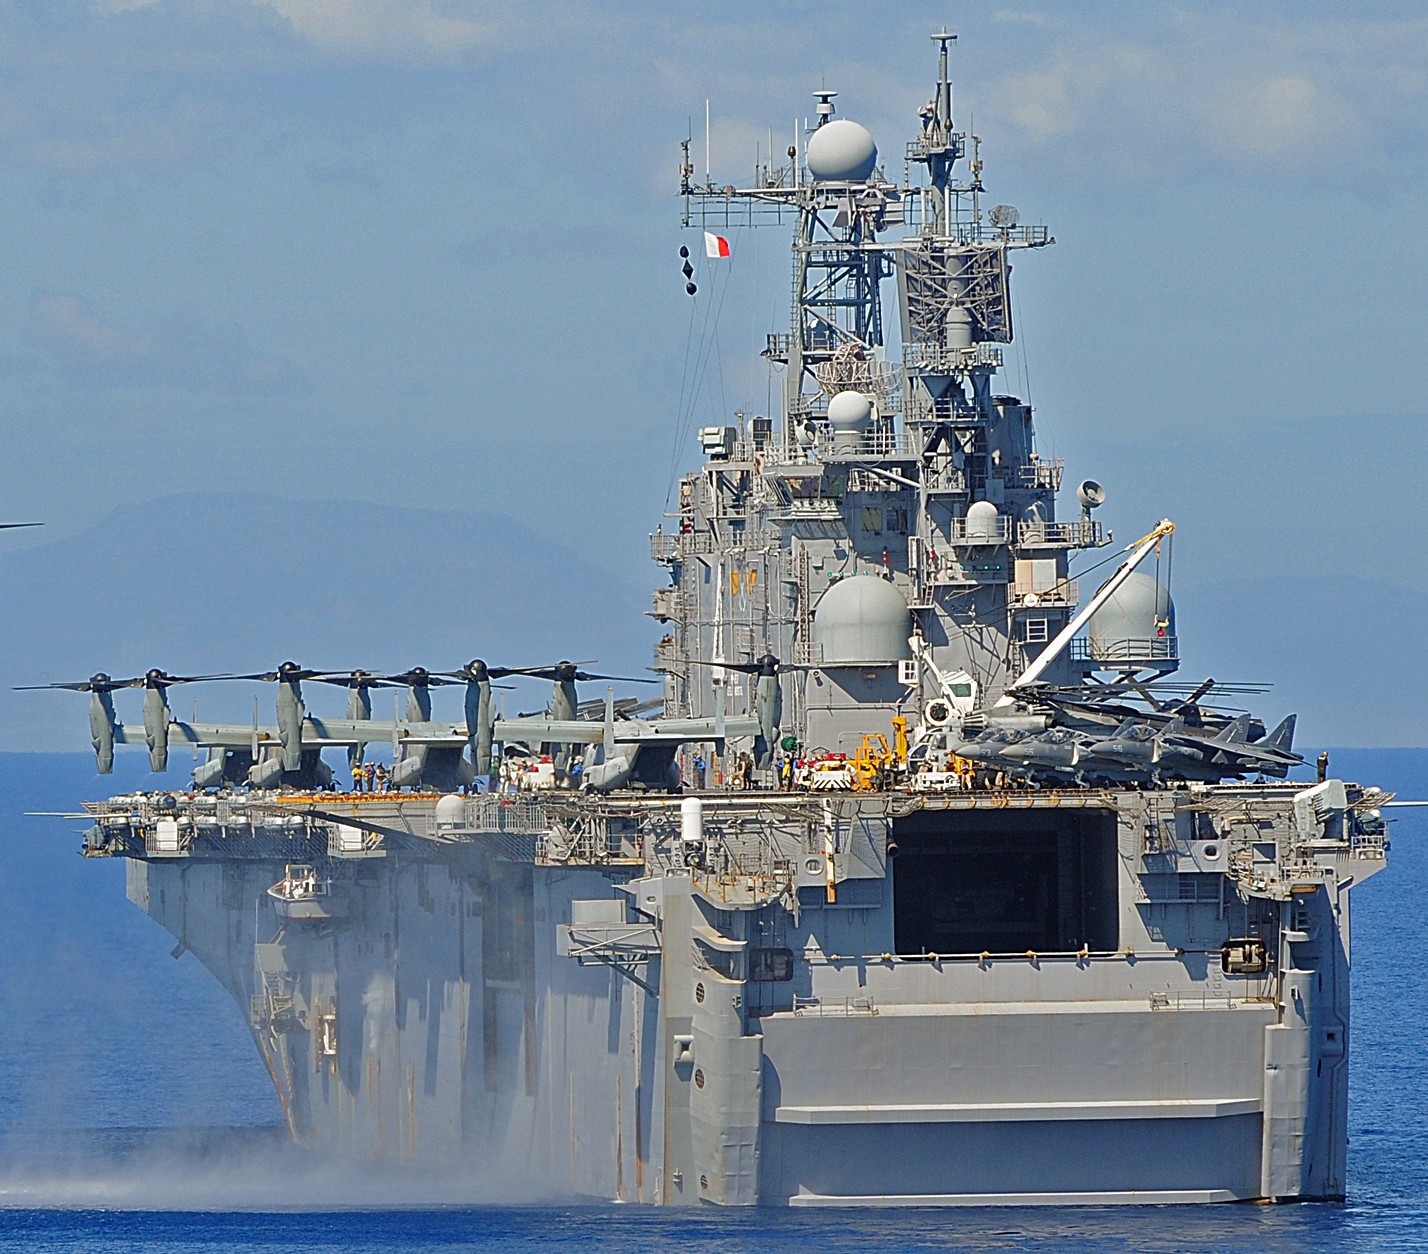 lha-4 uss nassau tarawa class amphibious assault ship us navy 50 operation unified response haiti